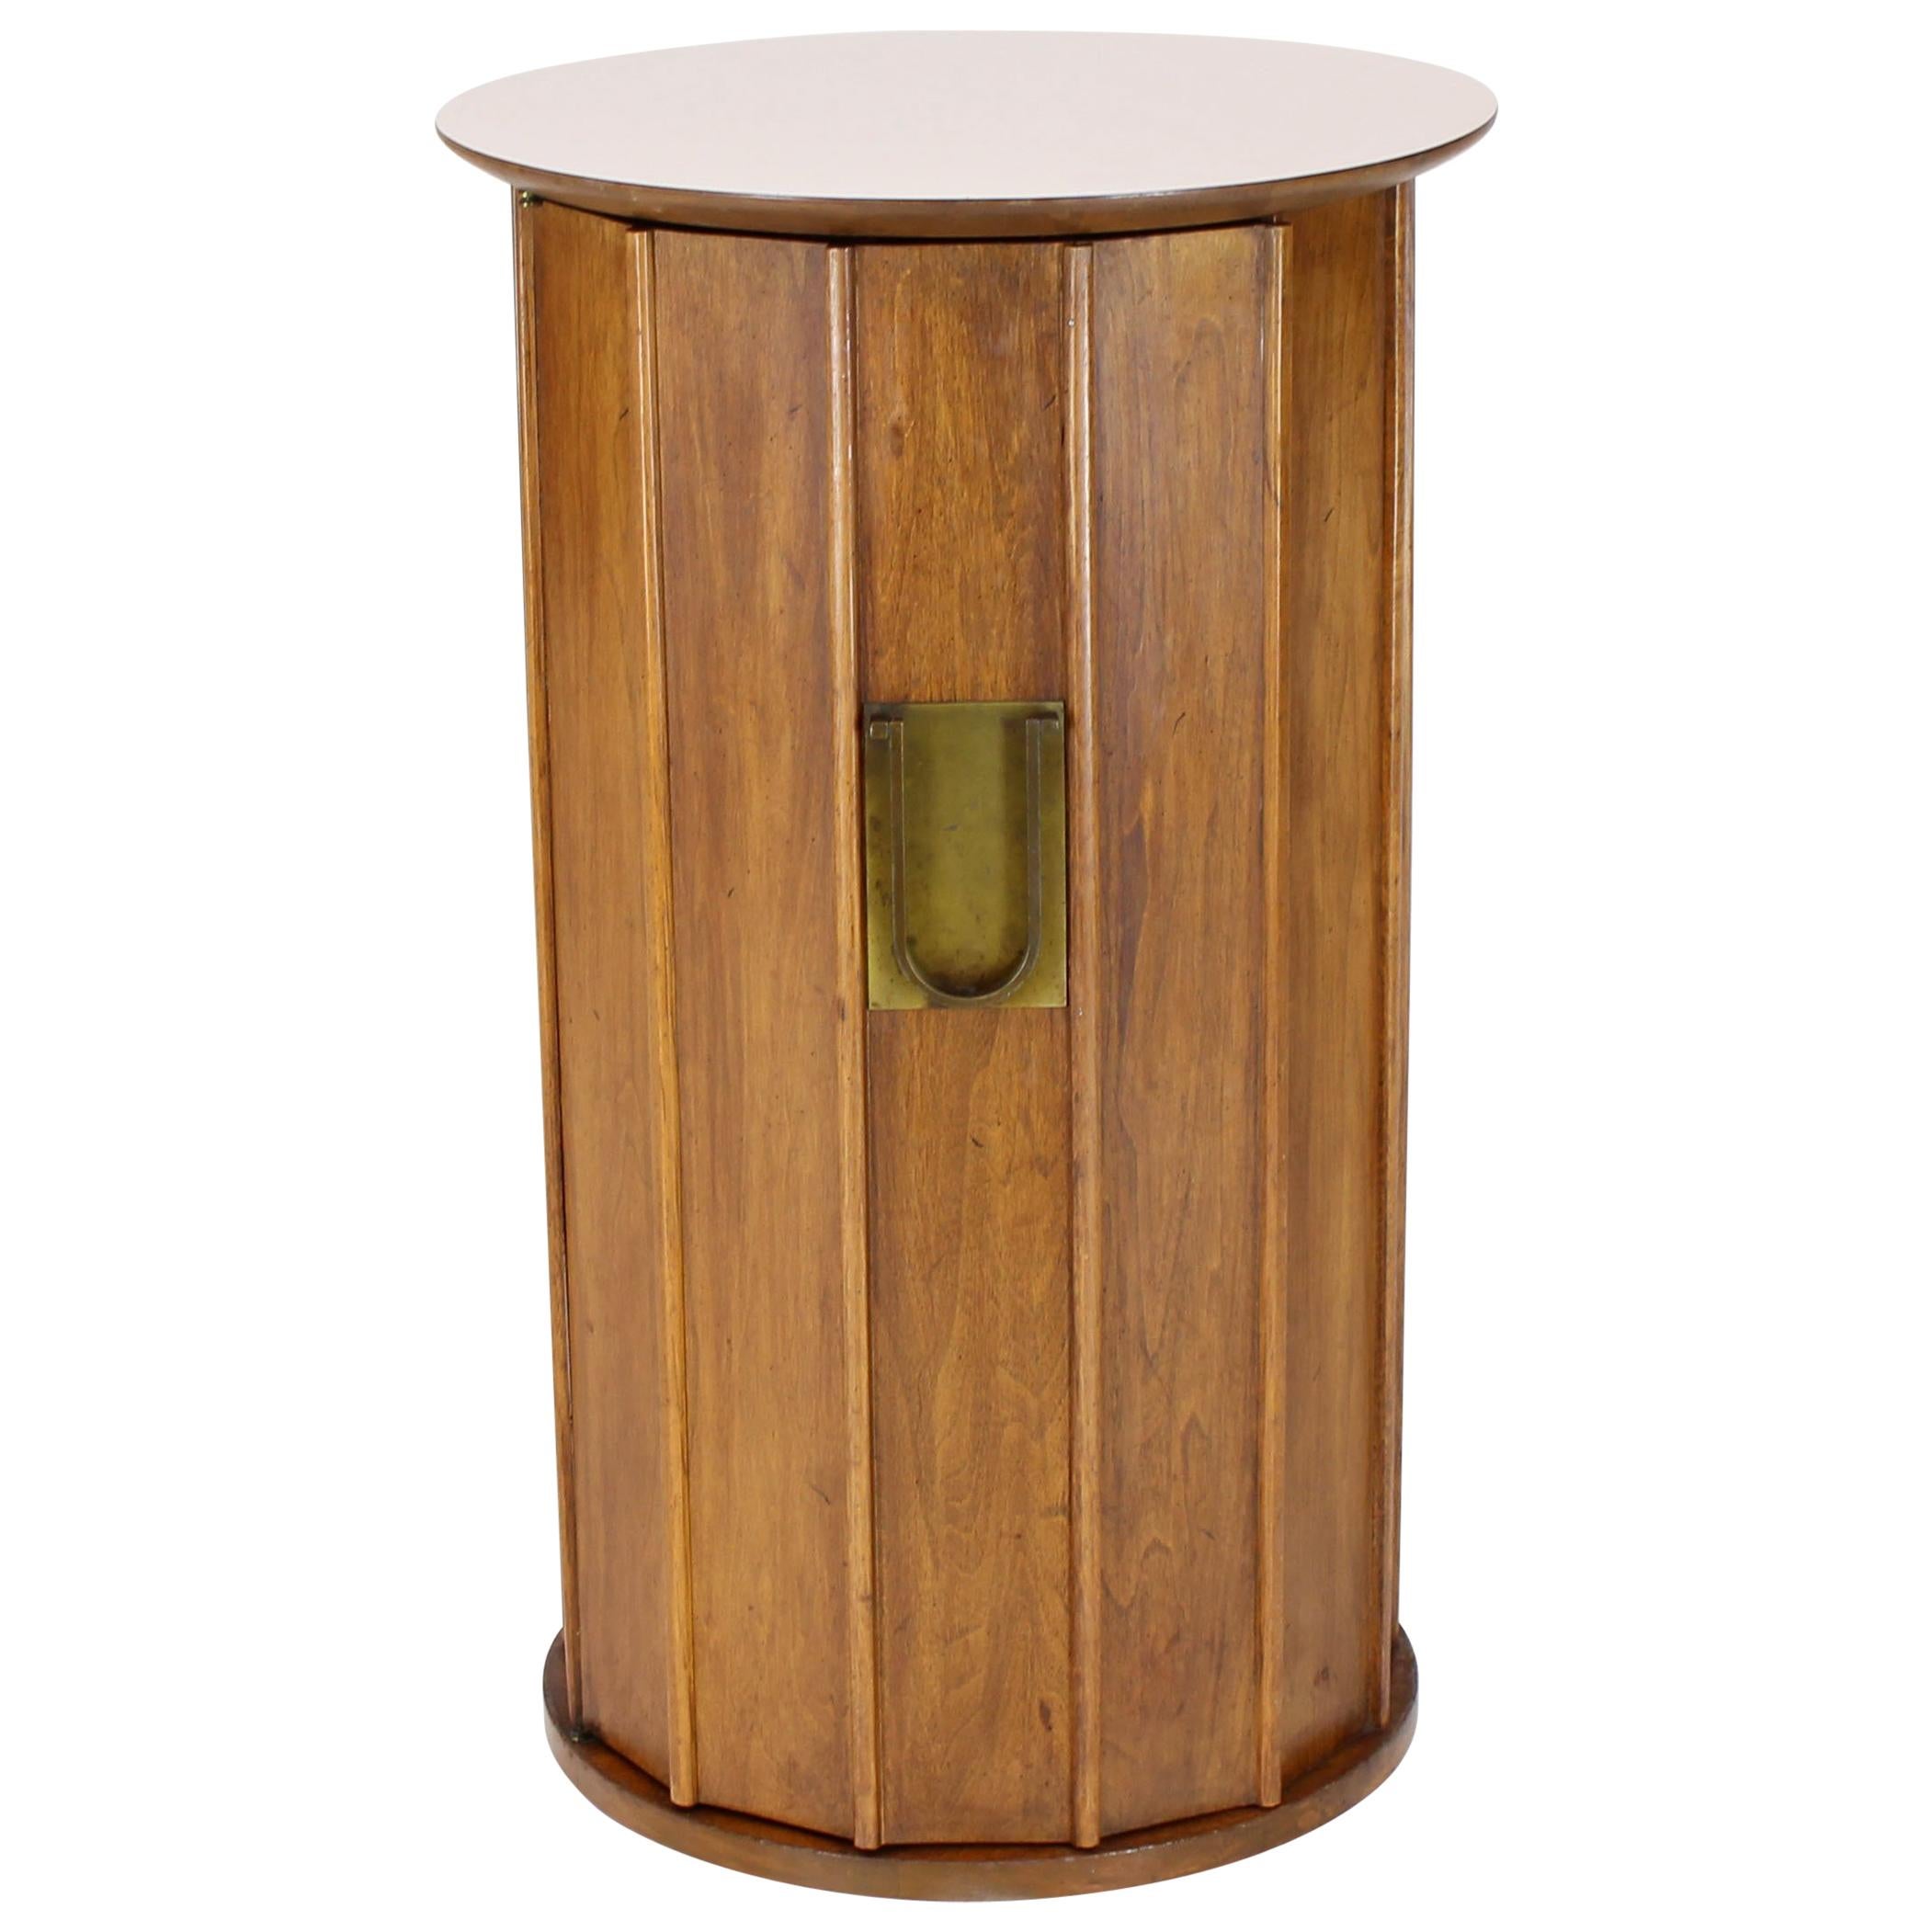 Round Cylinder Shape Pedestal Bar Cabinet Storage Cabinet with Brass Hardware